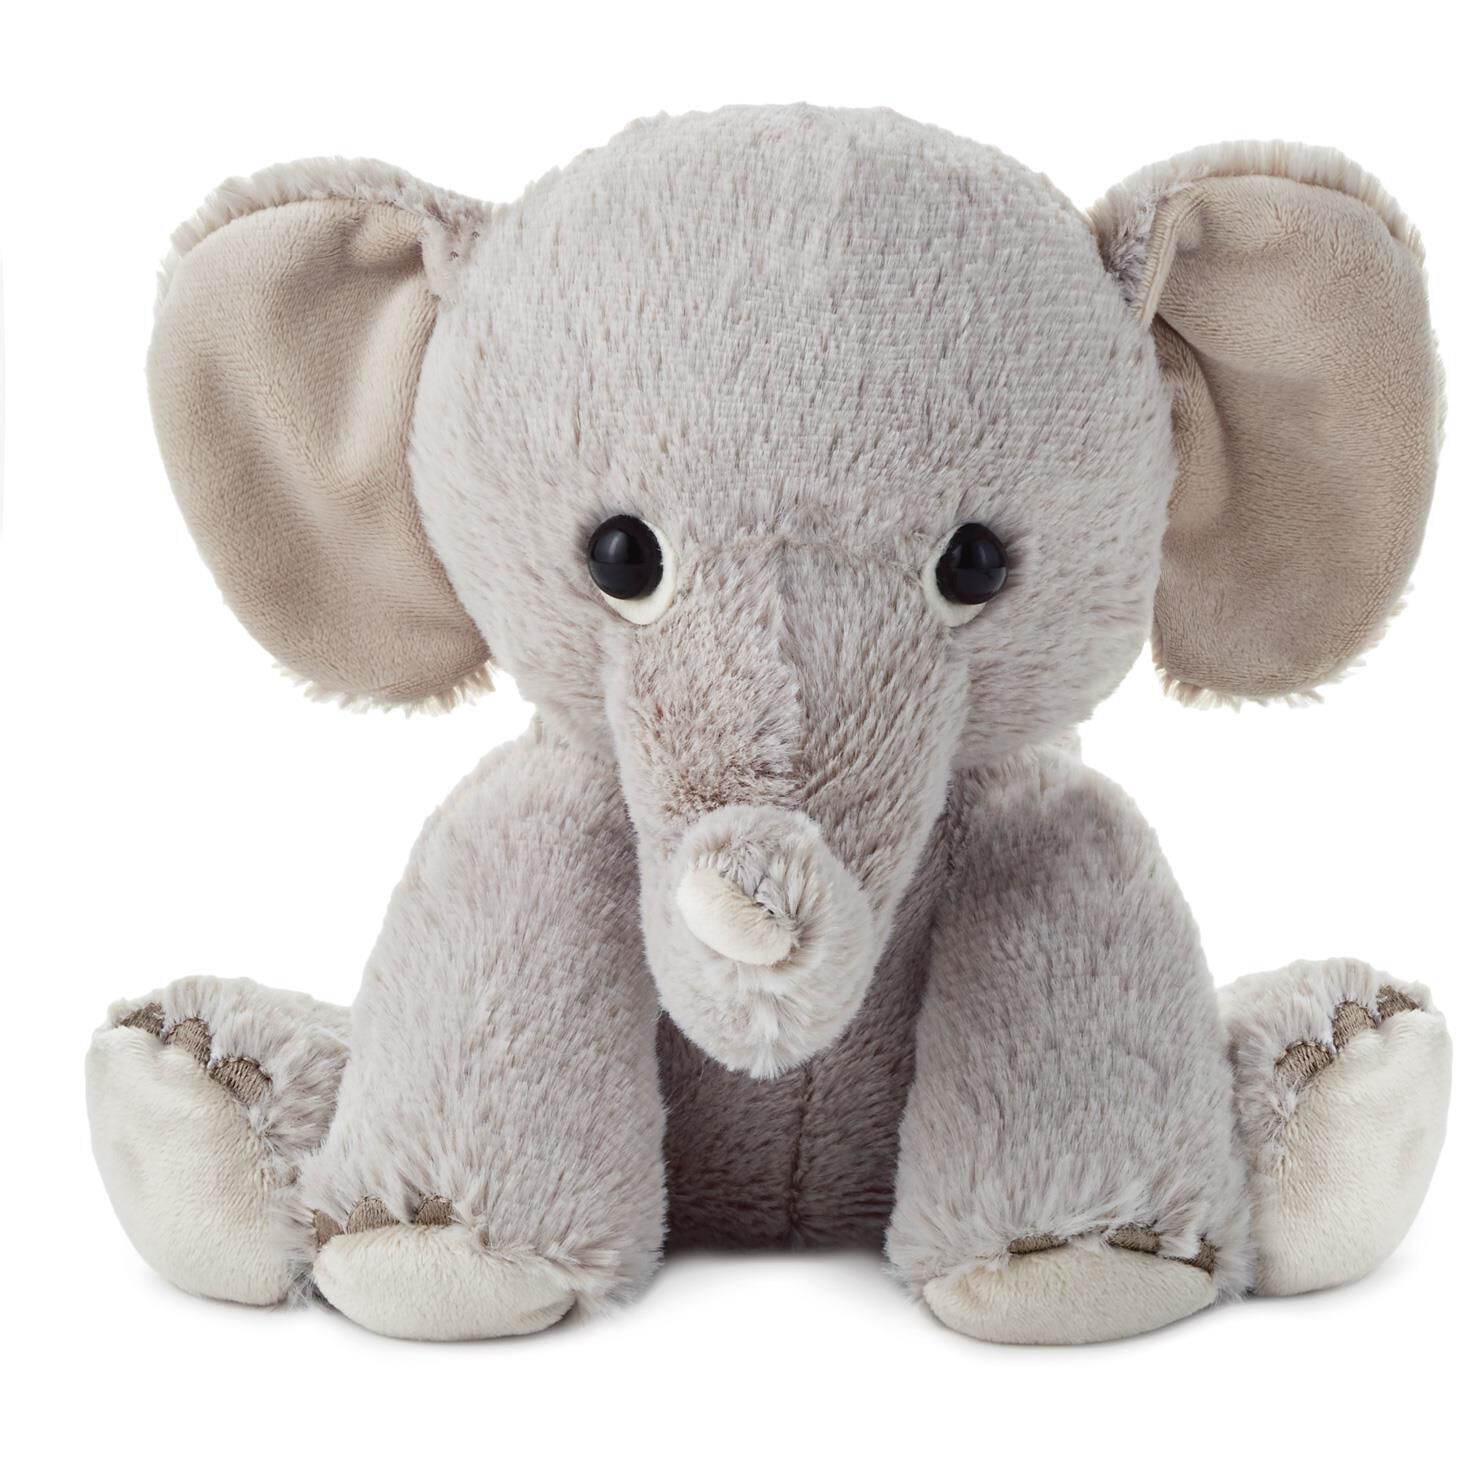 where to buy a stuffed elephant